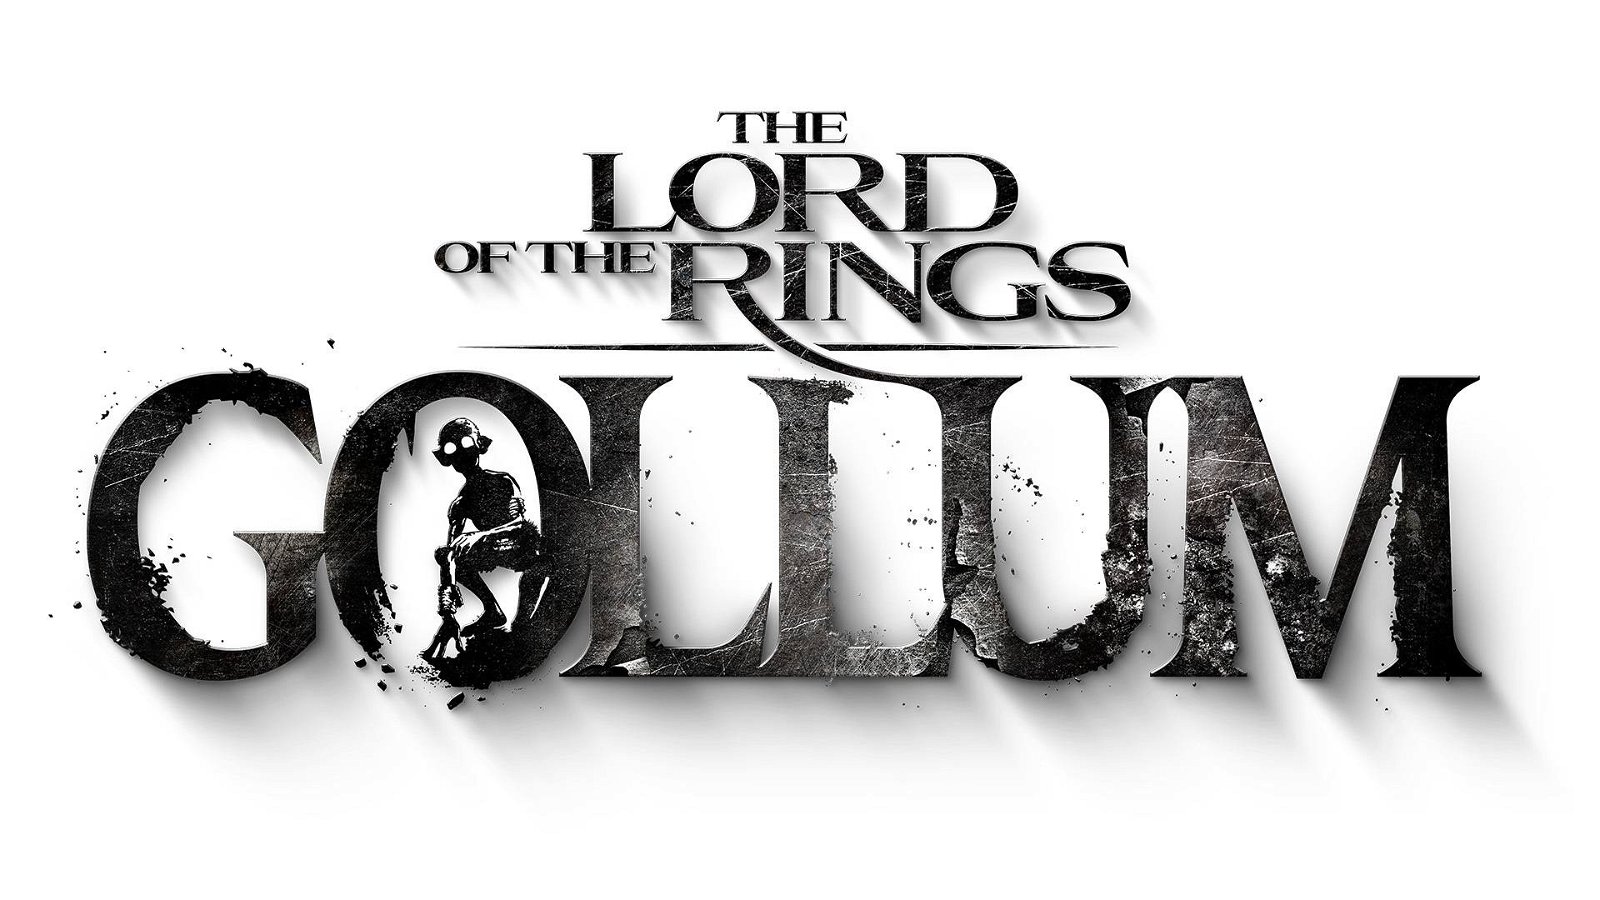 Immagine di The Lord of the Rings Gollum è a rischio cancellazione a causa della cattiva situazione finanziaria di Daedalic Entertainment